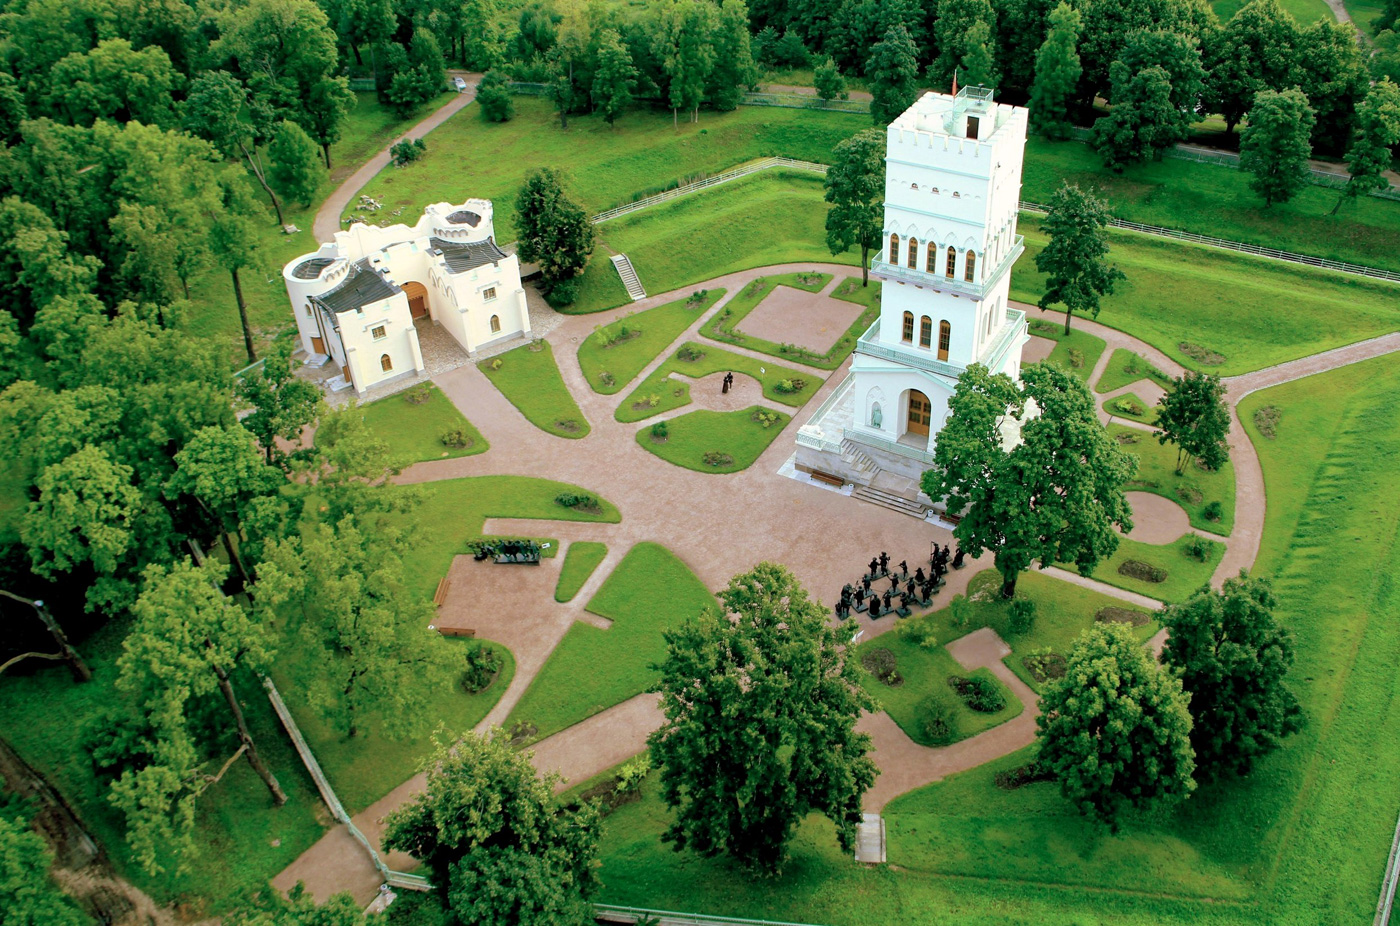 Александровский парк белая башня